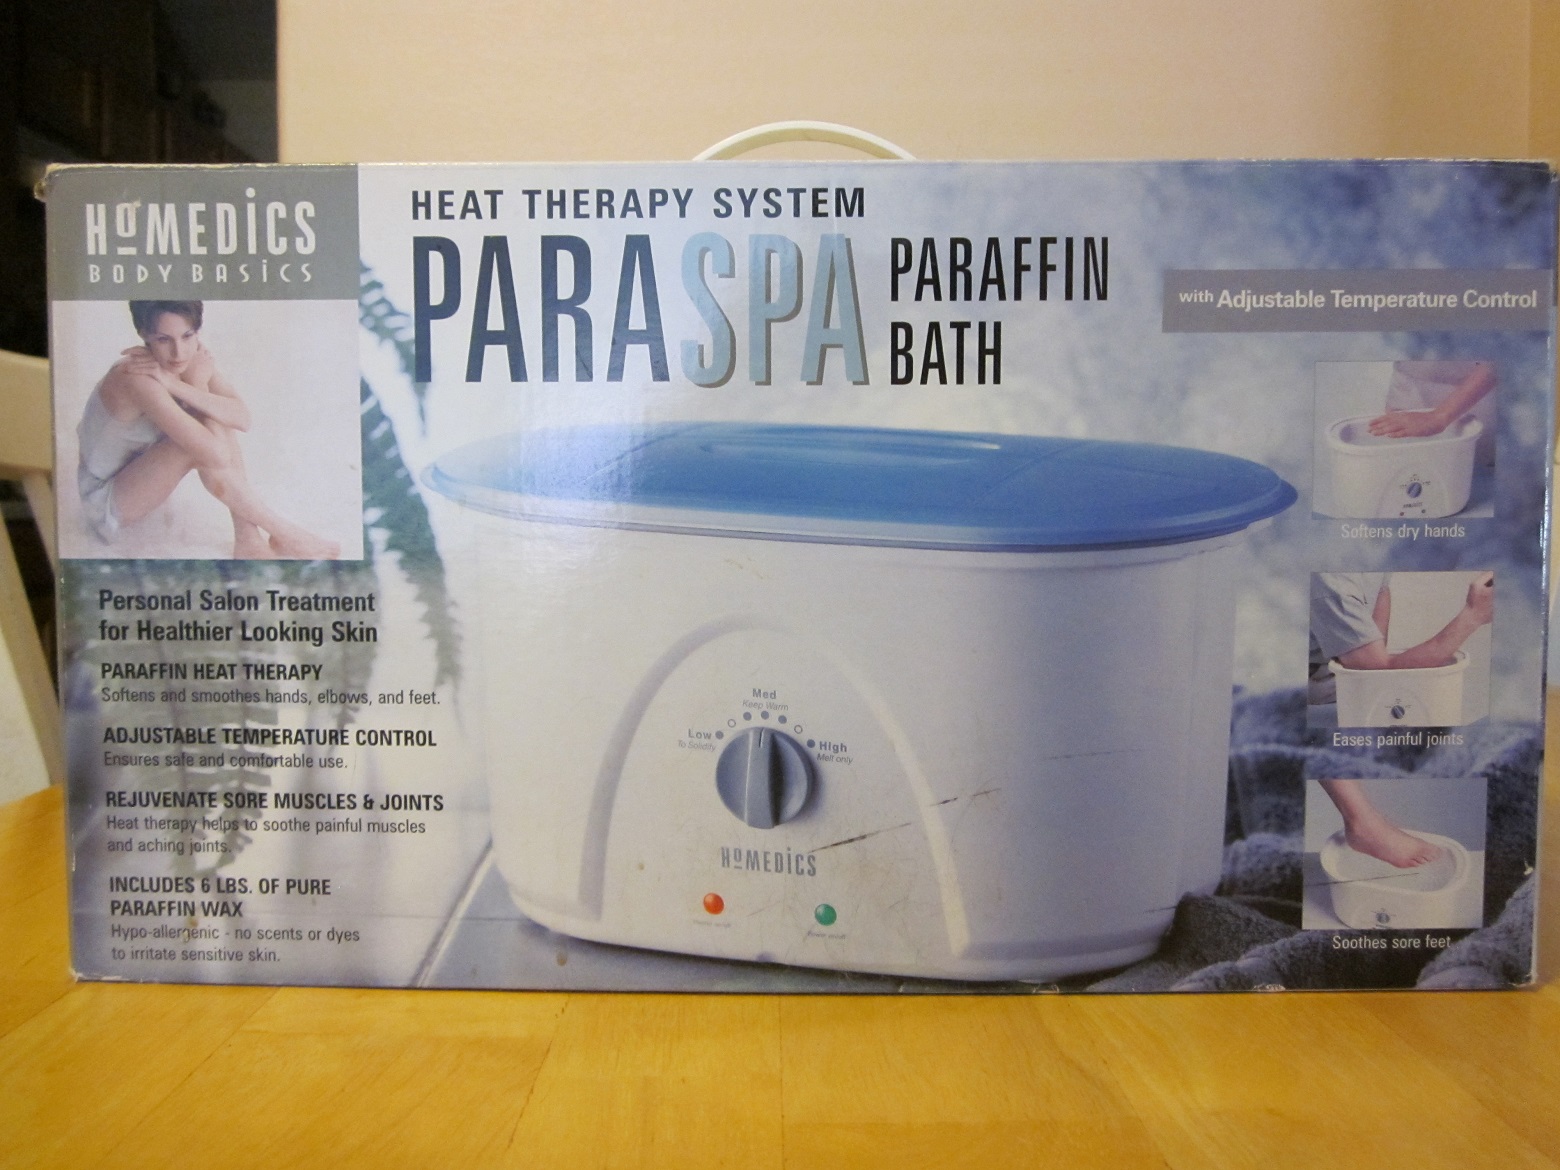 Homedics Body Basics Paraspa Paraffin Bath